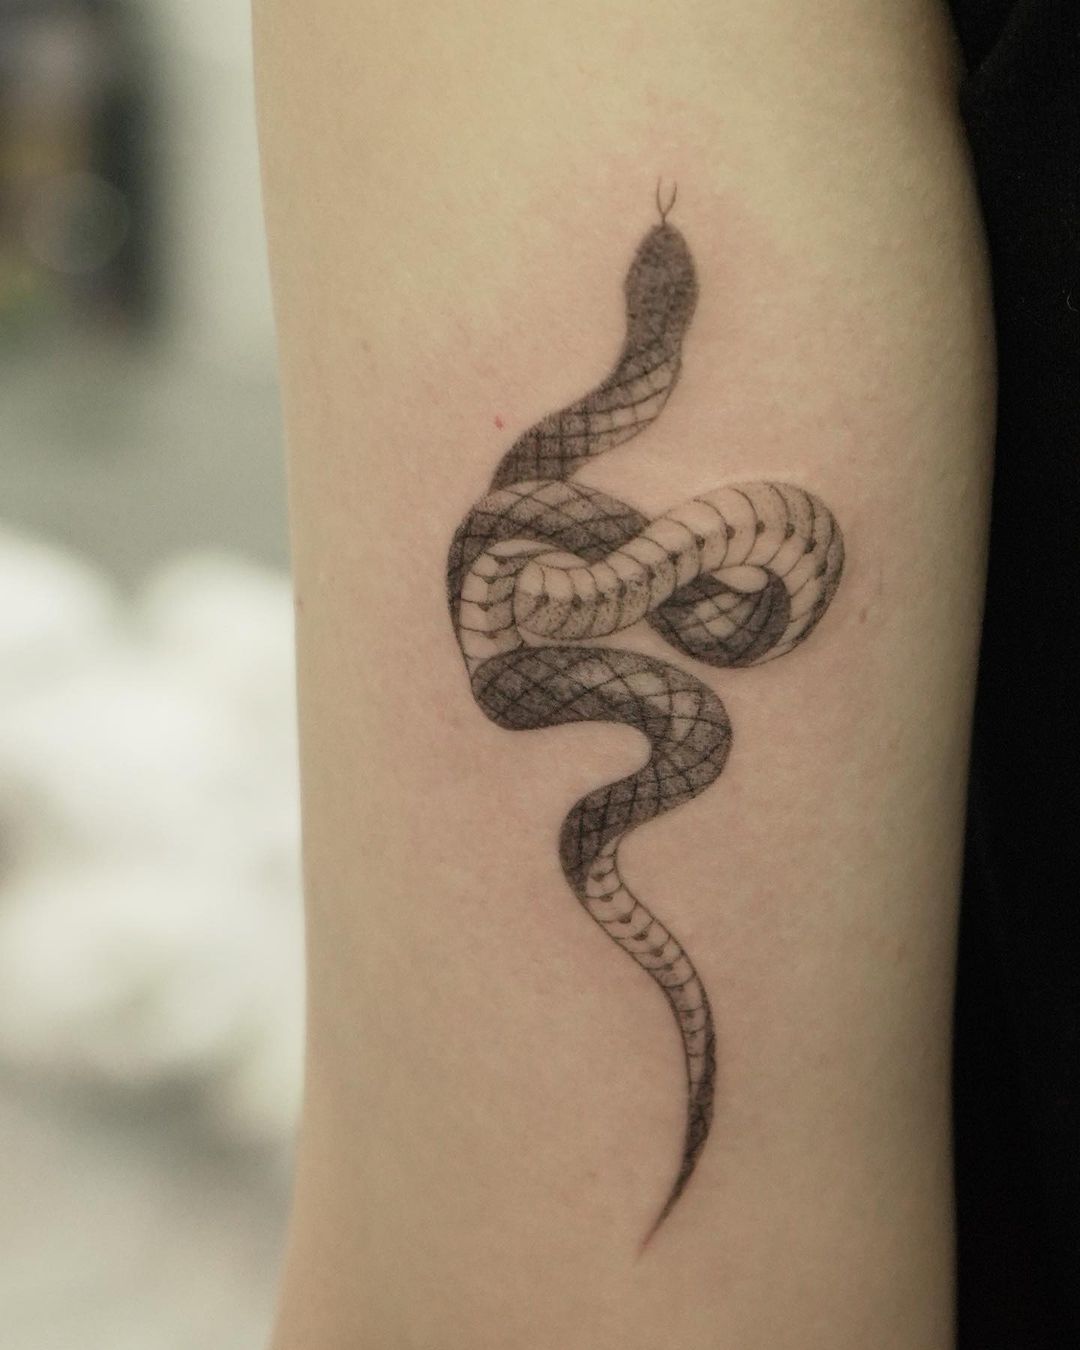 Simple snake tattoo by tattooist sodam